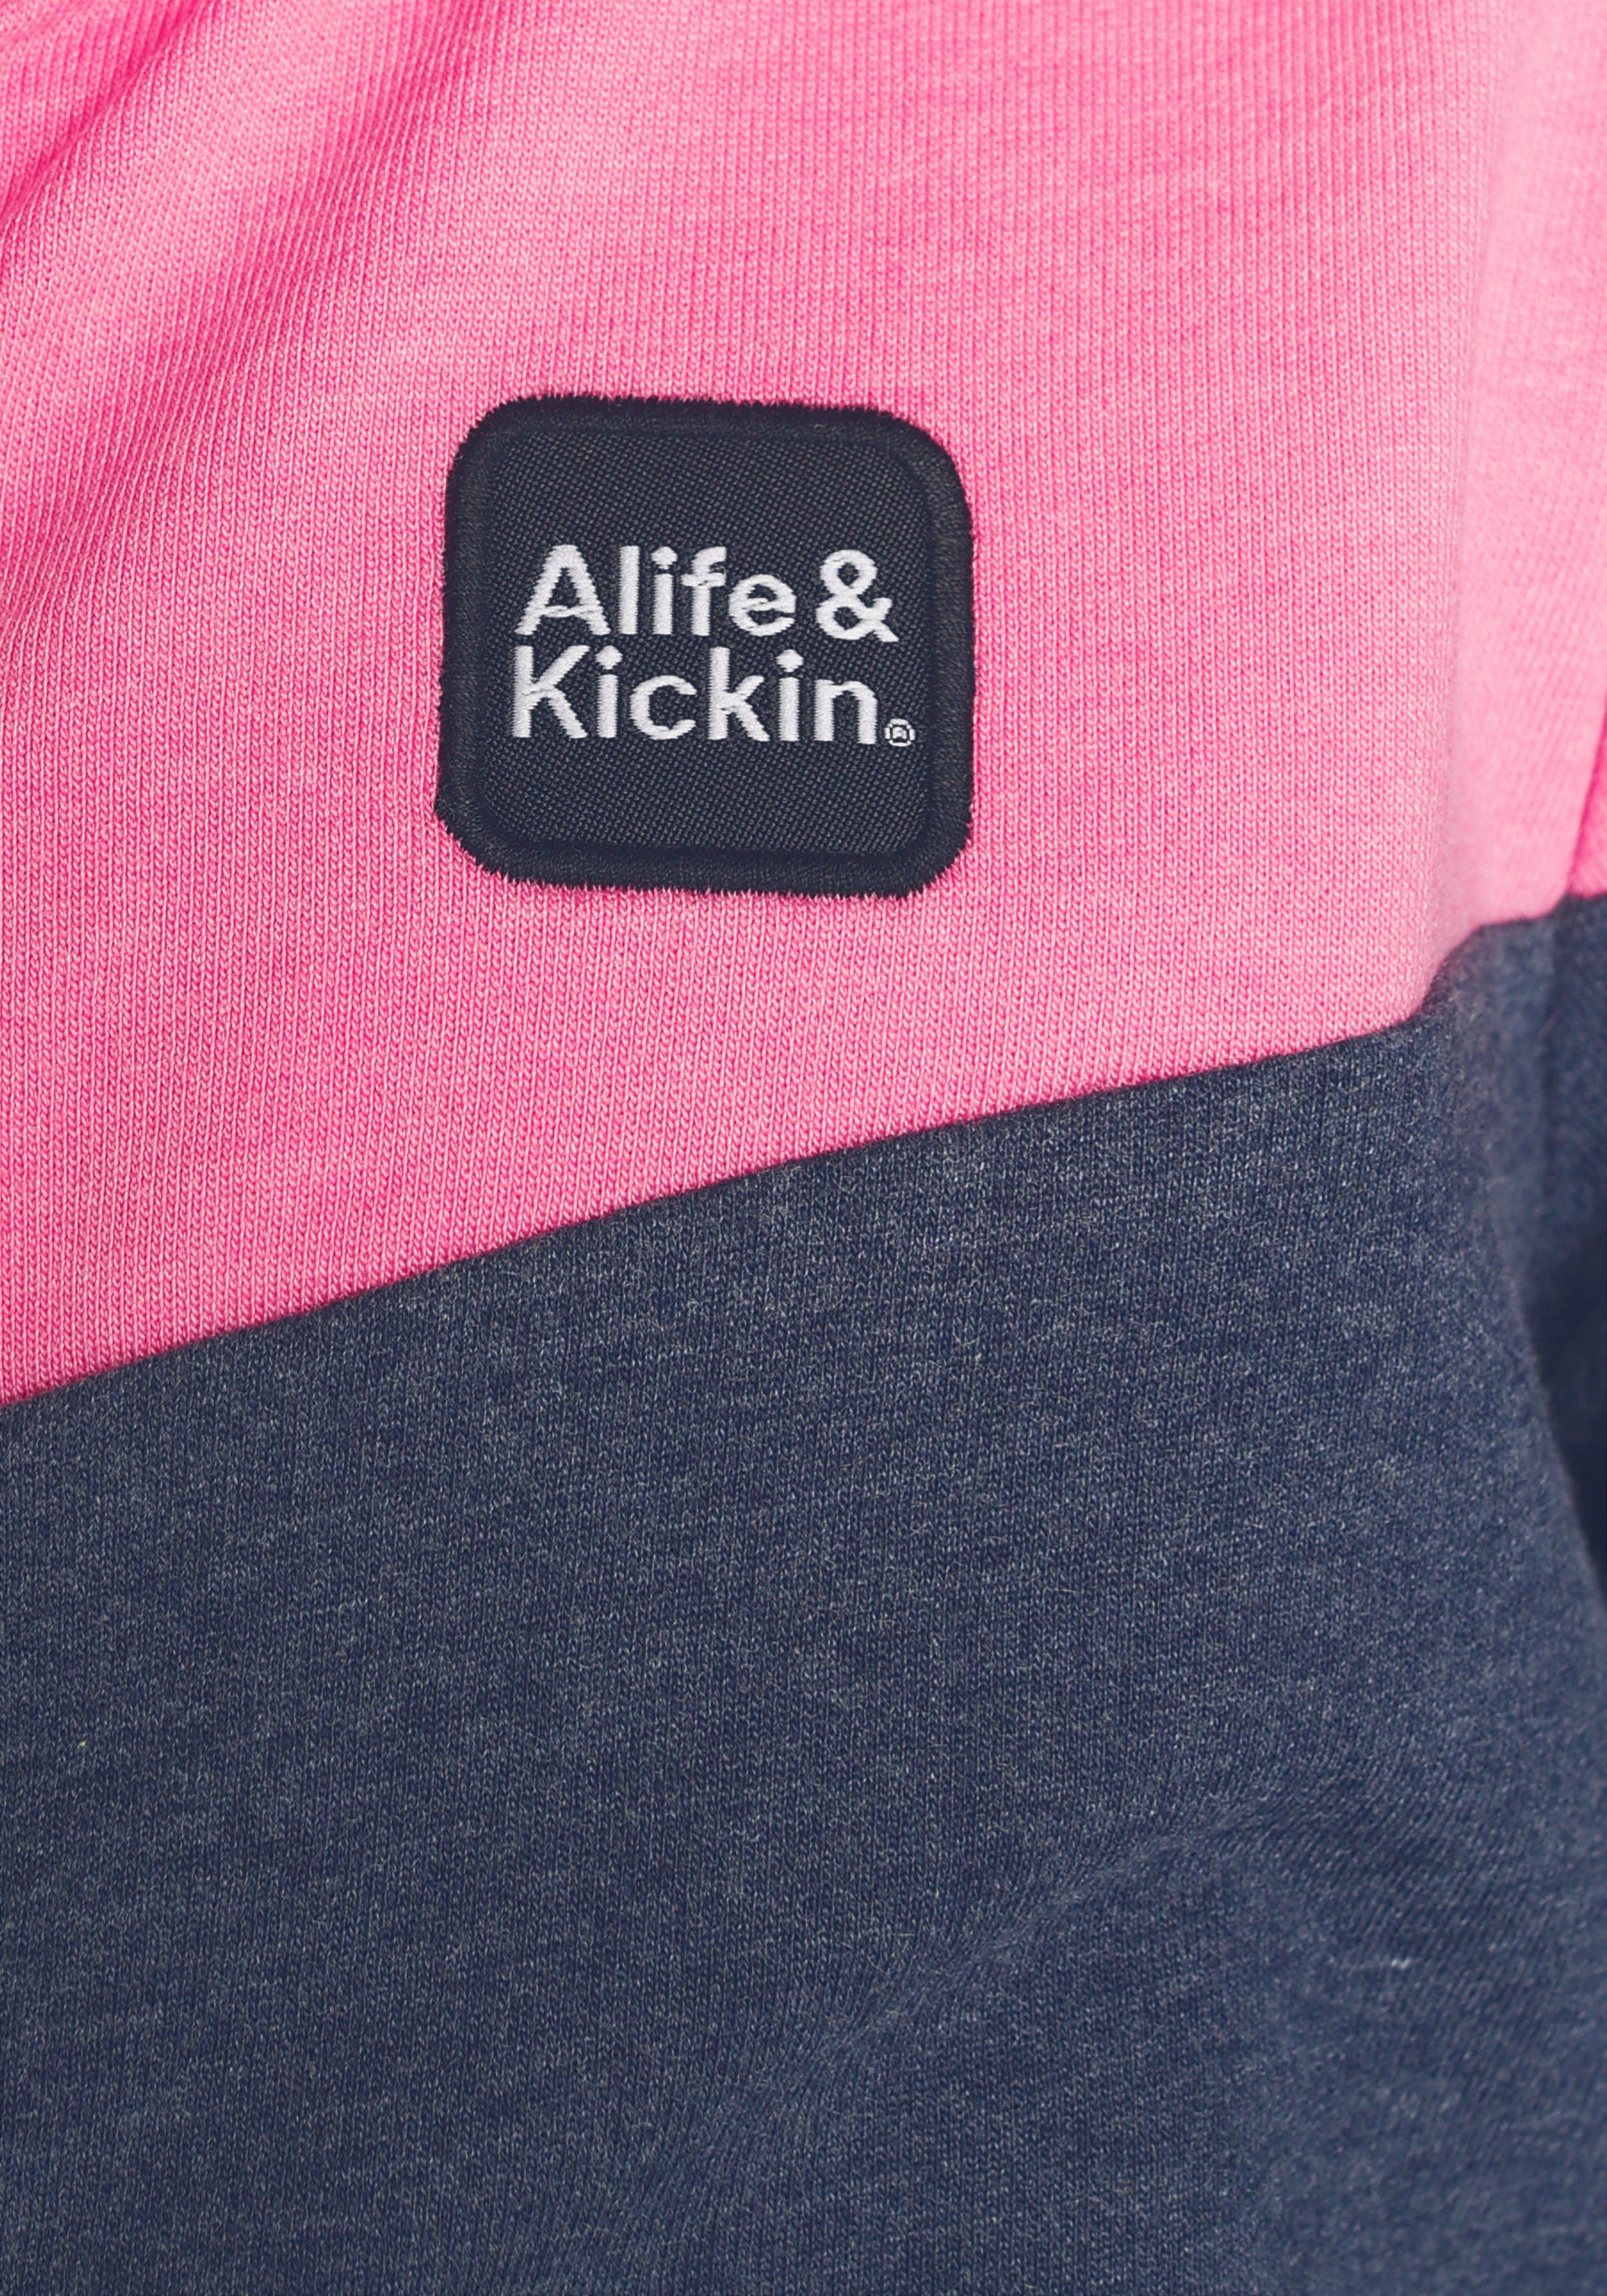 Alife & & coolem Kickin für Kickin NEUE Kids. Colourblocking MARKE! Sweatjacke mit Alife